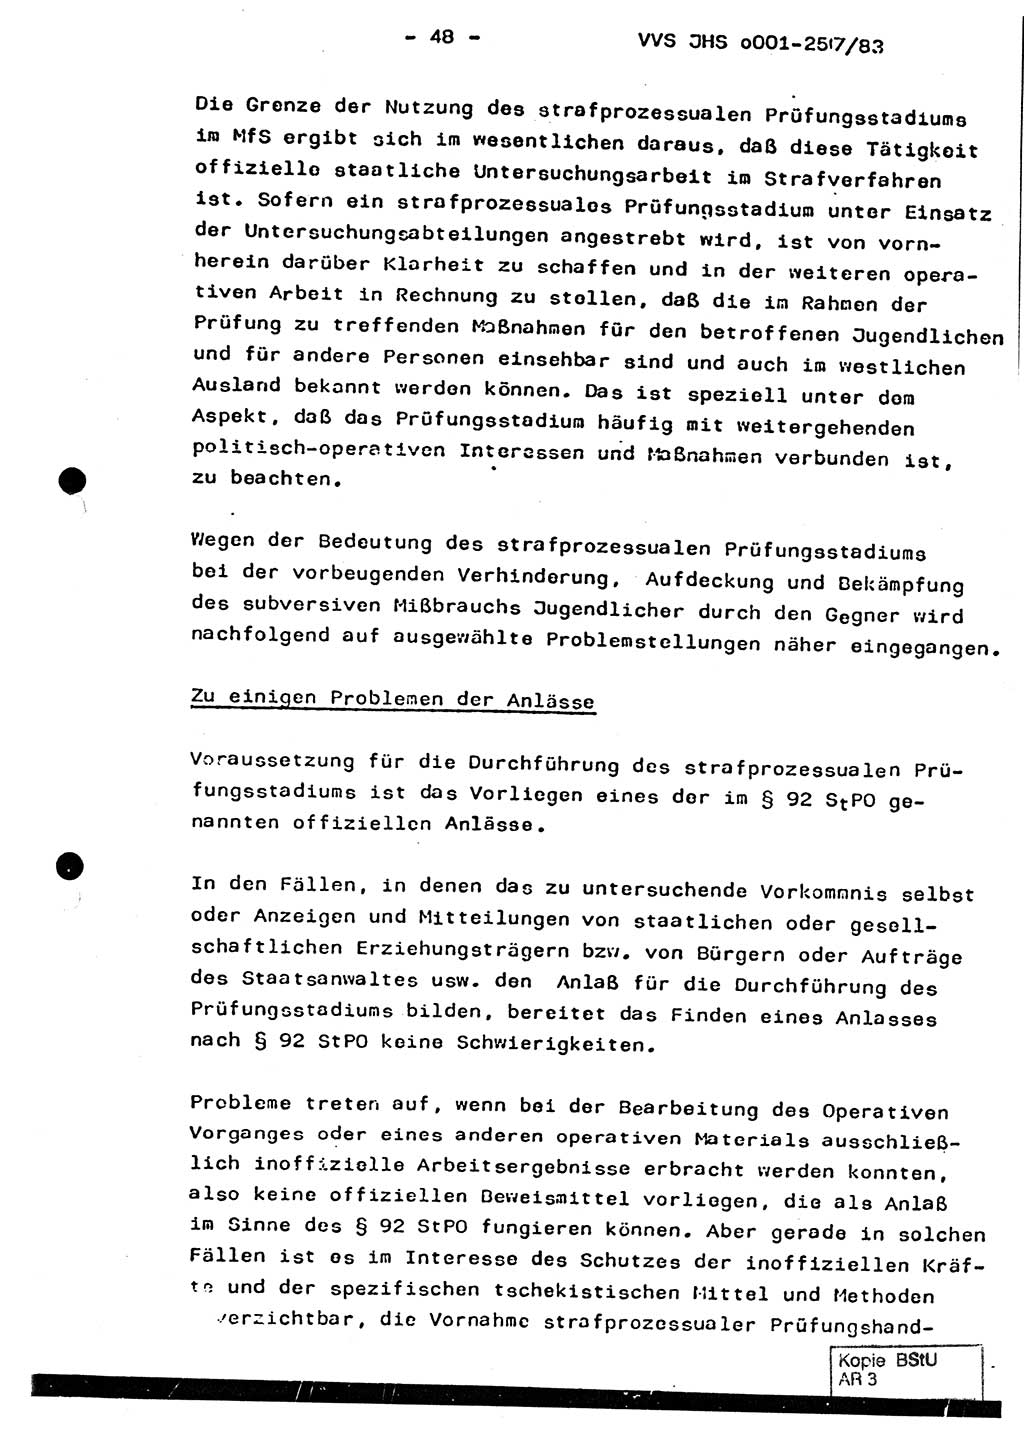 Dissertation, Oberst Helmut Lubas (BV Mdg.), Oberstleutnant Manfred Eschberger (HA IX), Oberleutnant Hans-Jürgen Ludwig (JHS), Ministerium für Staatssicherheit (MfS) [Deutsche Demokratische Republik (DDR)], Juristische Hochschule (JHS), Vertrauliche Verschlußsache (VVS) o001-257/83, Potsdam 1983, Seite 48 (Diss. MfS DDR JHS VVS o001-257/83 1983, S. 48)